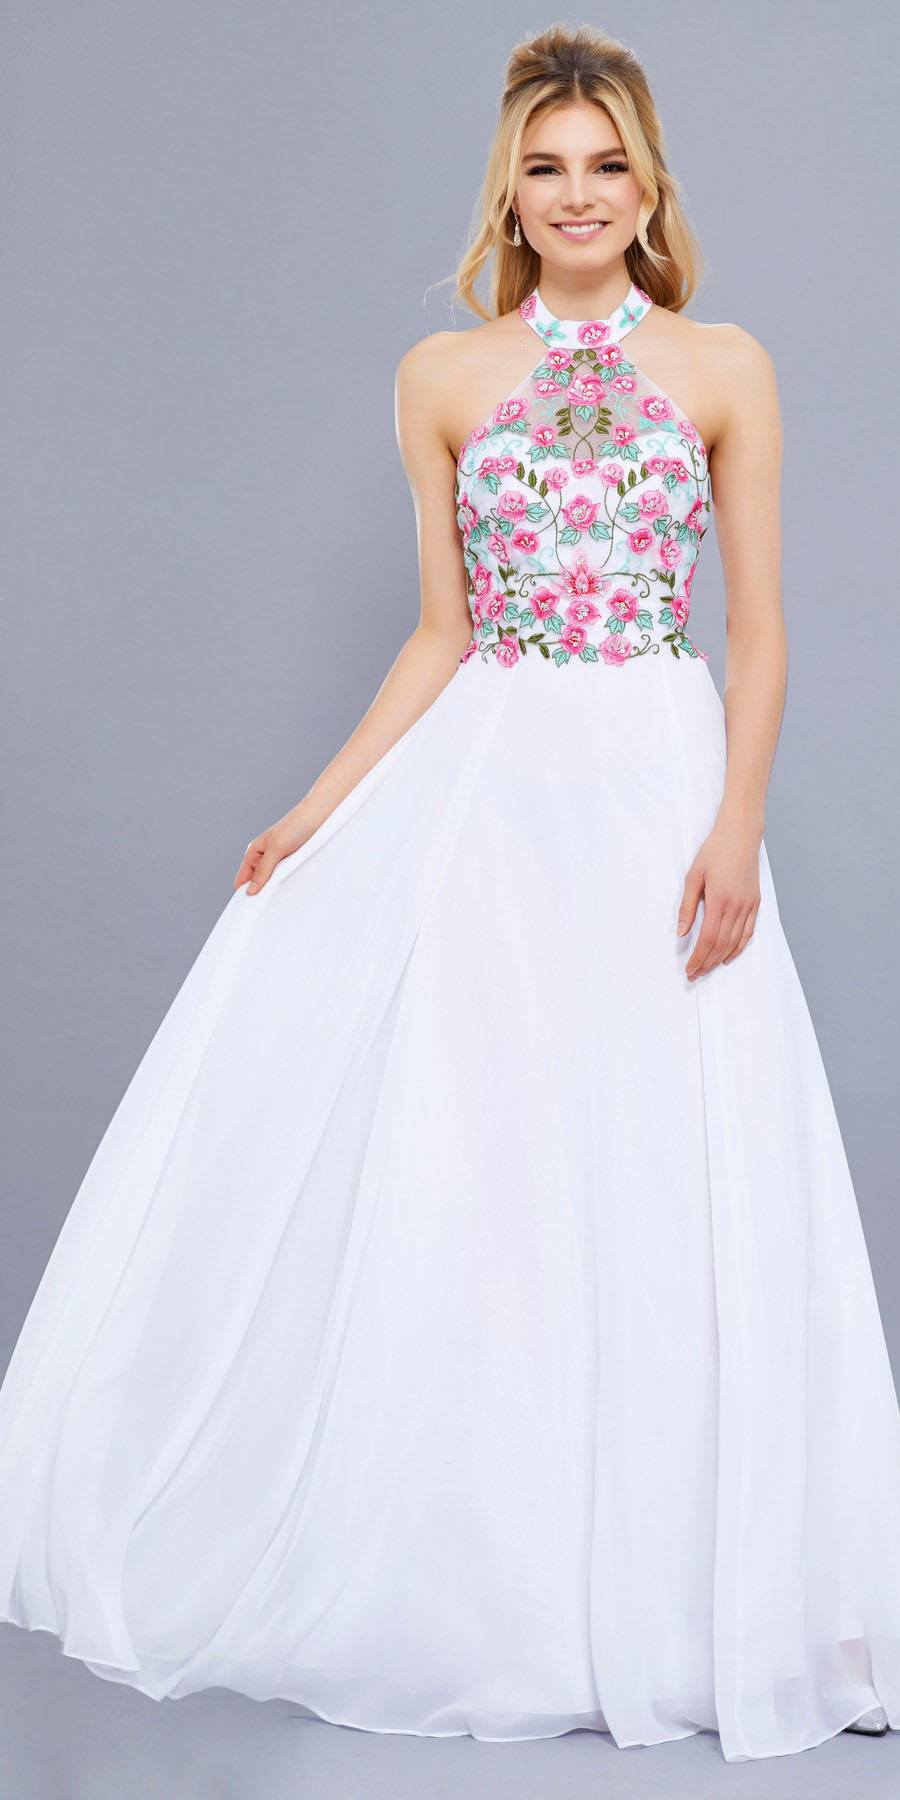 white halter formal dress